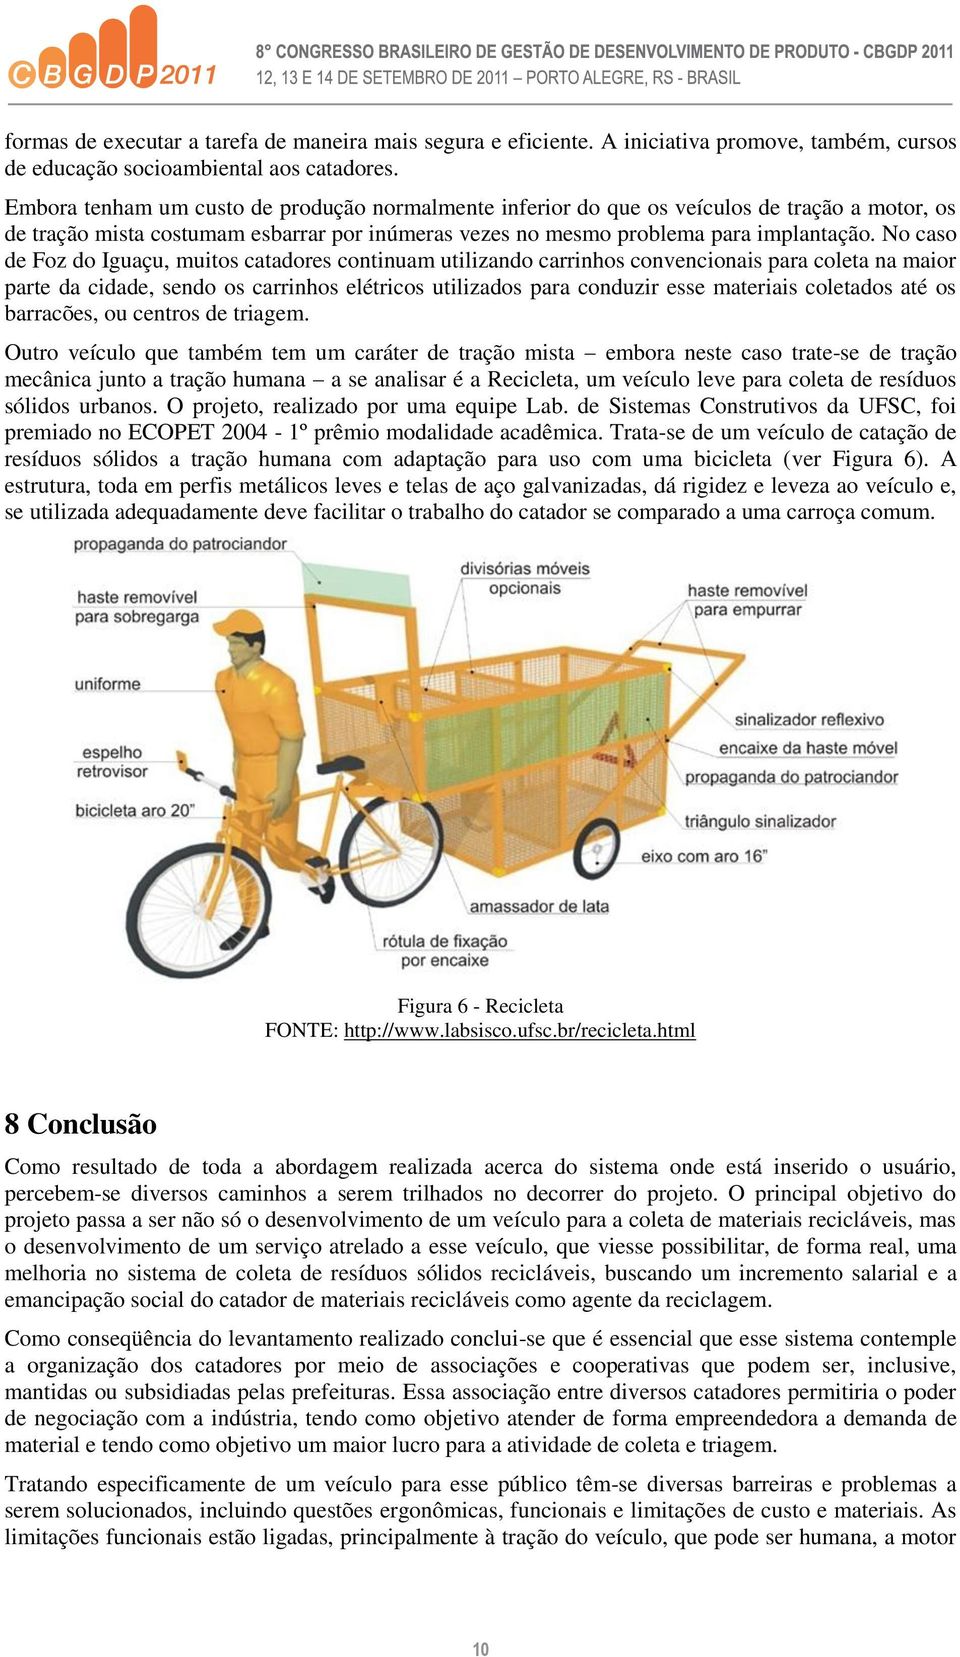 No caso de Foz do Iguaçu, muitos catadores continuam utilizando carrinhos convencionais para coleta na maior parte da cidade, sendo os carrinhos elétricos utilizados para conduzir esse materiais